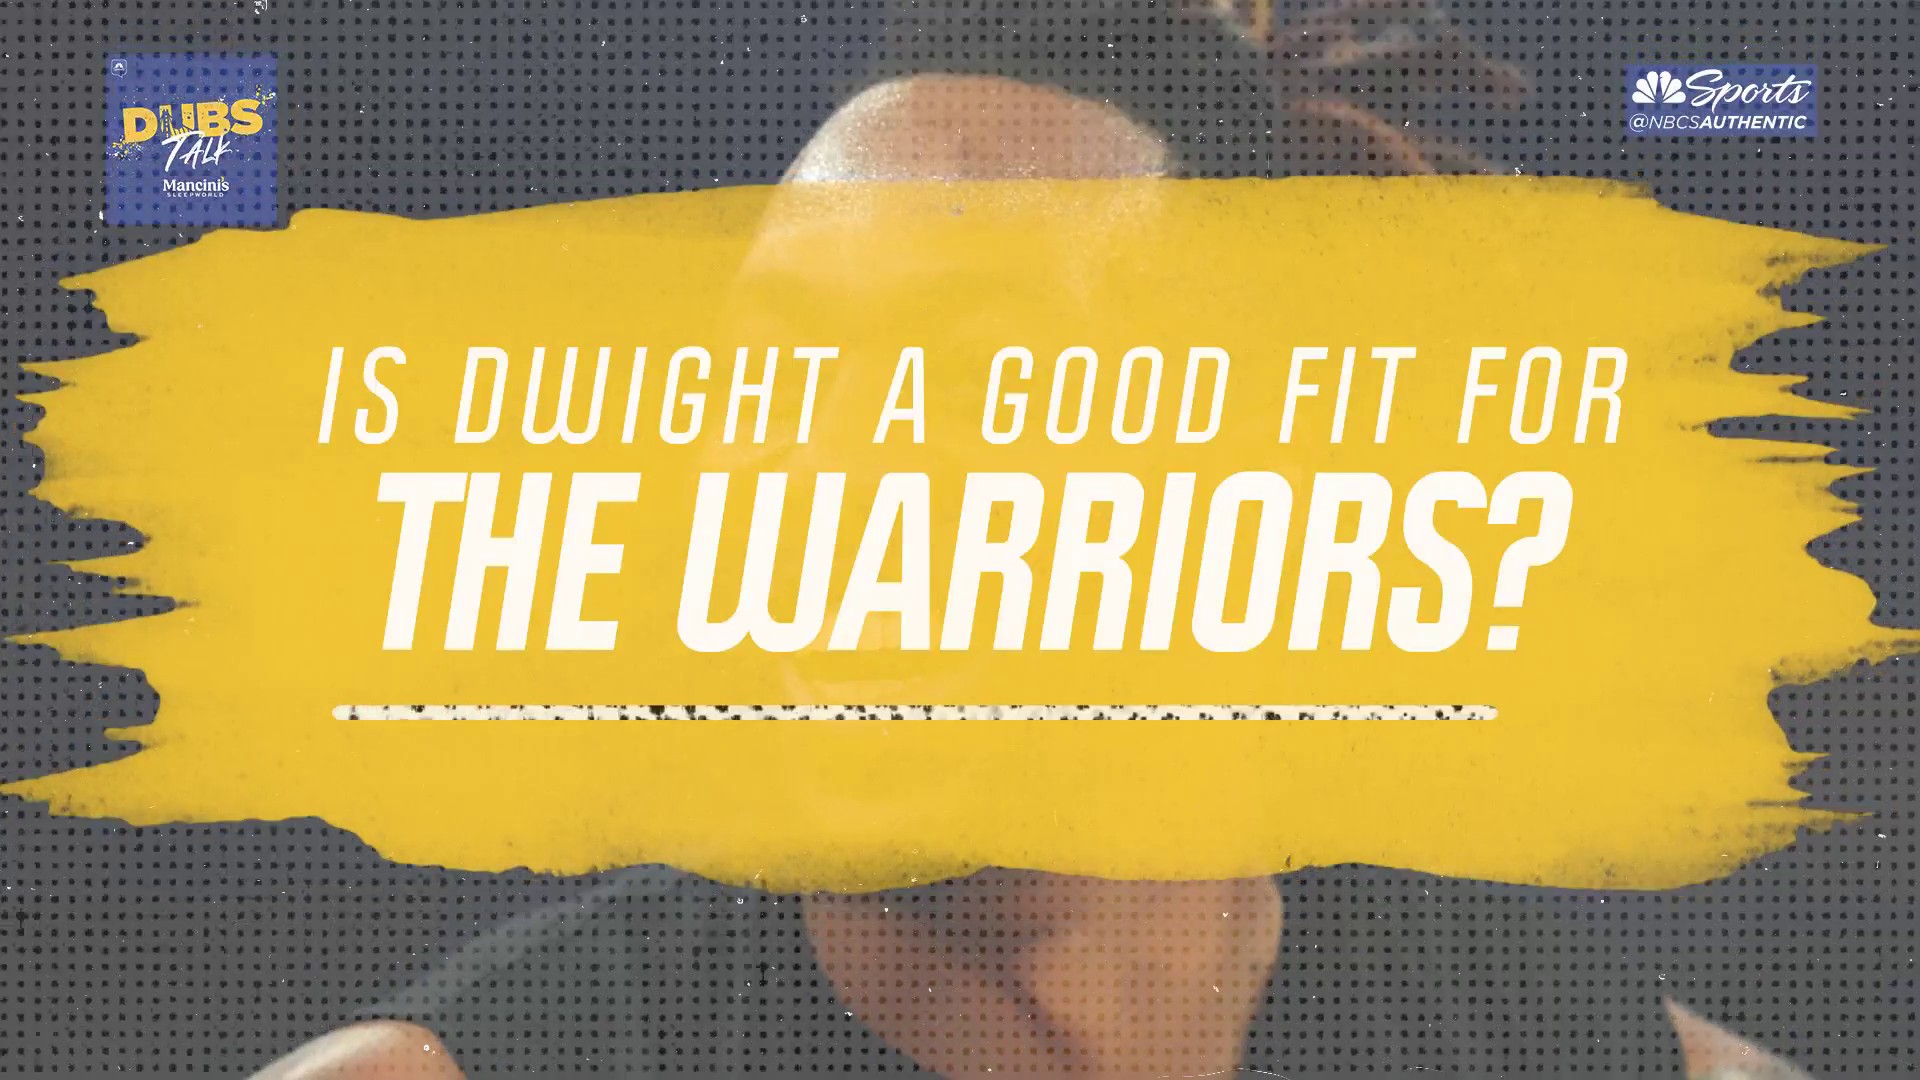 Warriors News: Should the Warriors sign Dwight Howard? - Golden